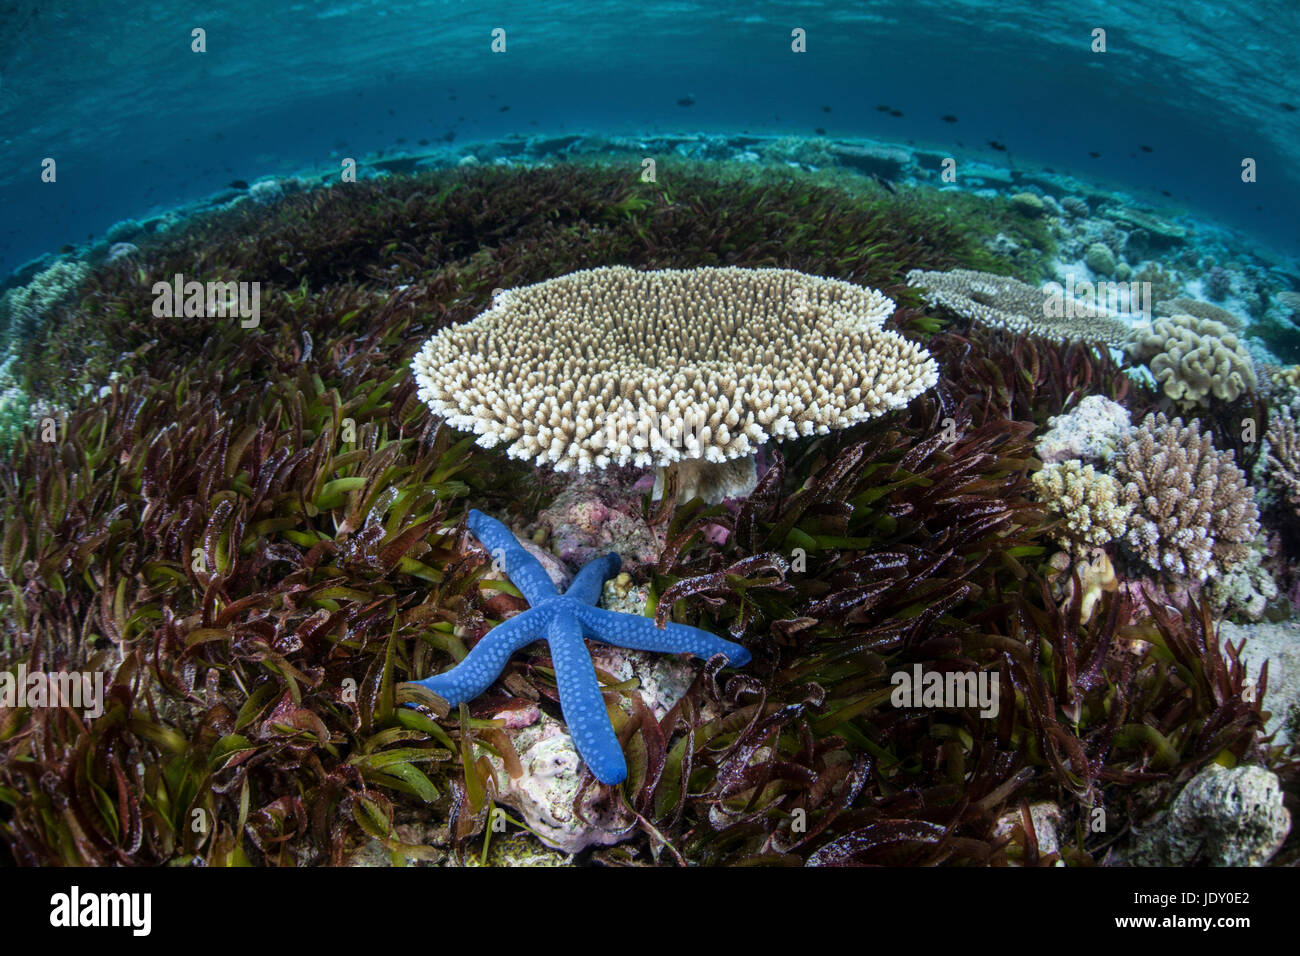 L'étoile bleue dans Seagras, Linckia laevigata, lit, les Célèbes, Indonésie Wakatobi Banque D'Images